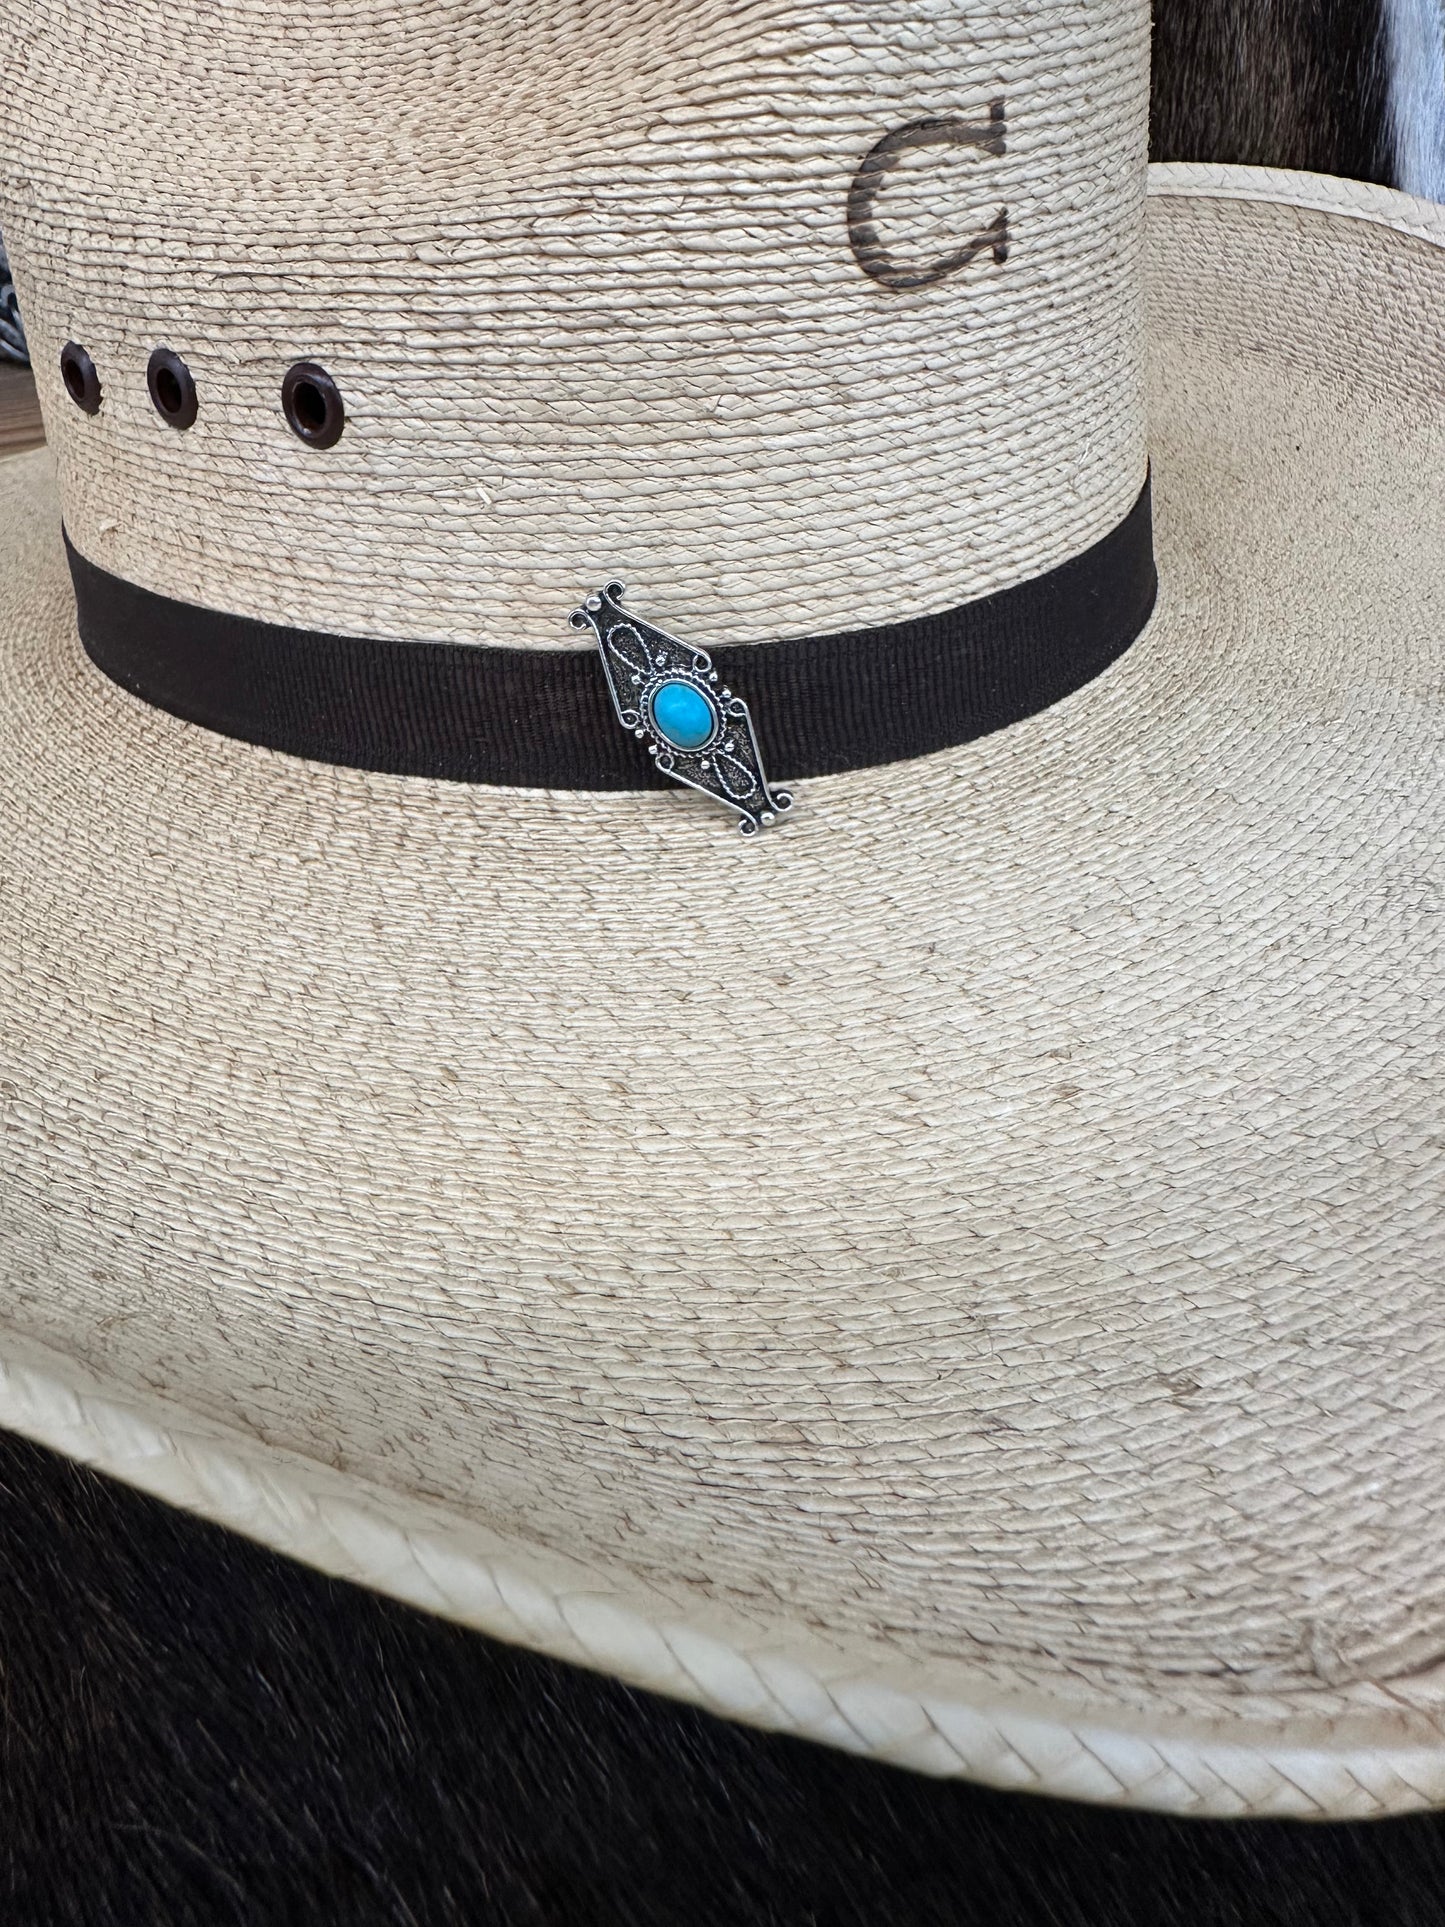 The Unique Hat Pin